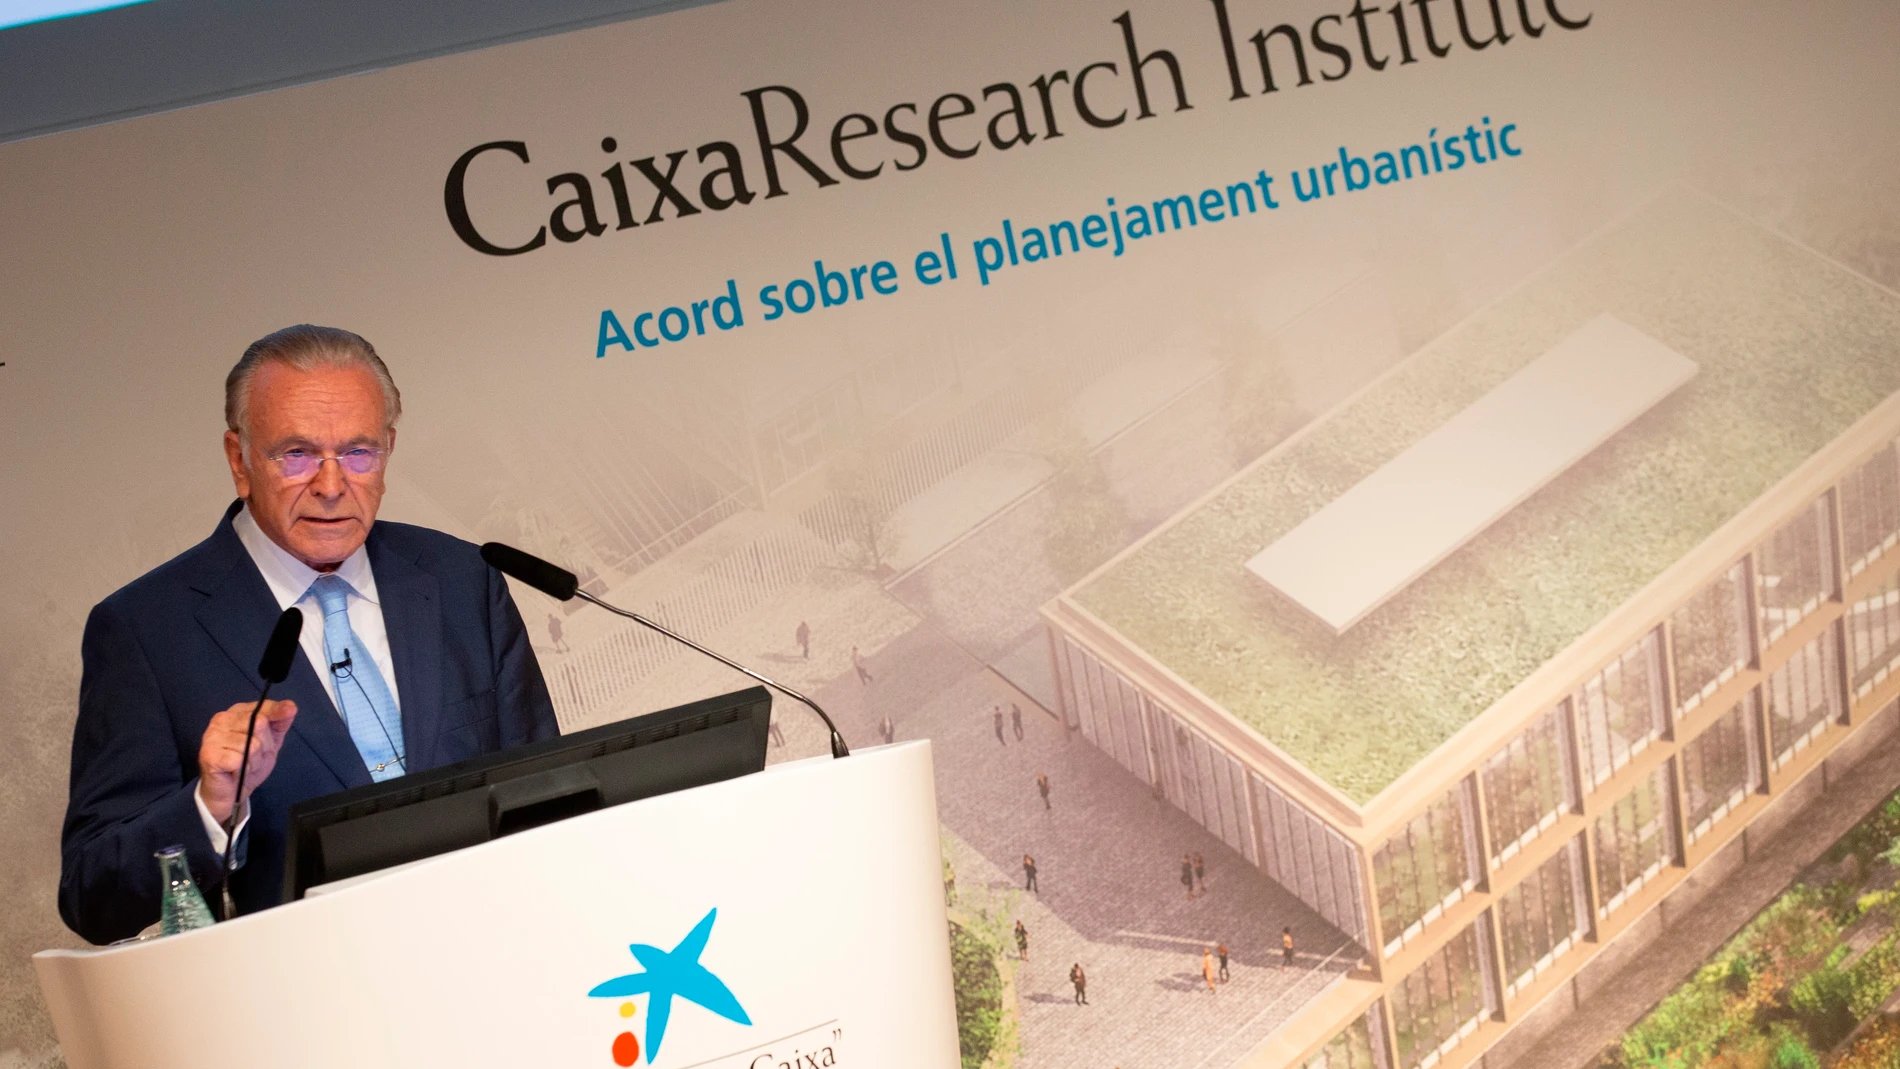 El presidente de la Fundación La Caixa, Isidre Fainé interviene este jueves durante la presentación del proyecto